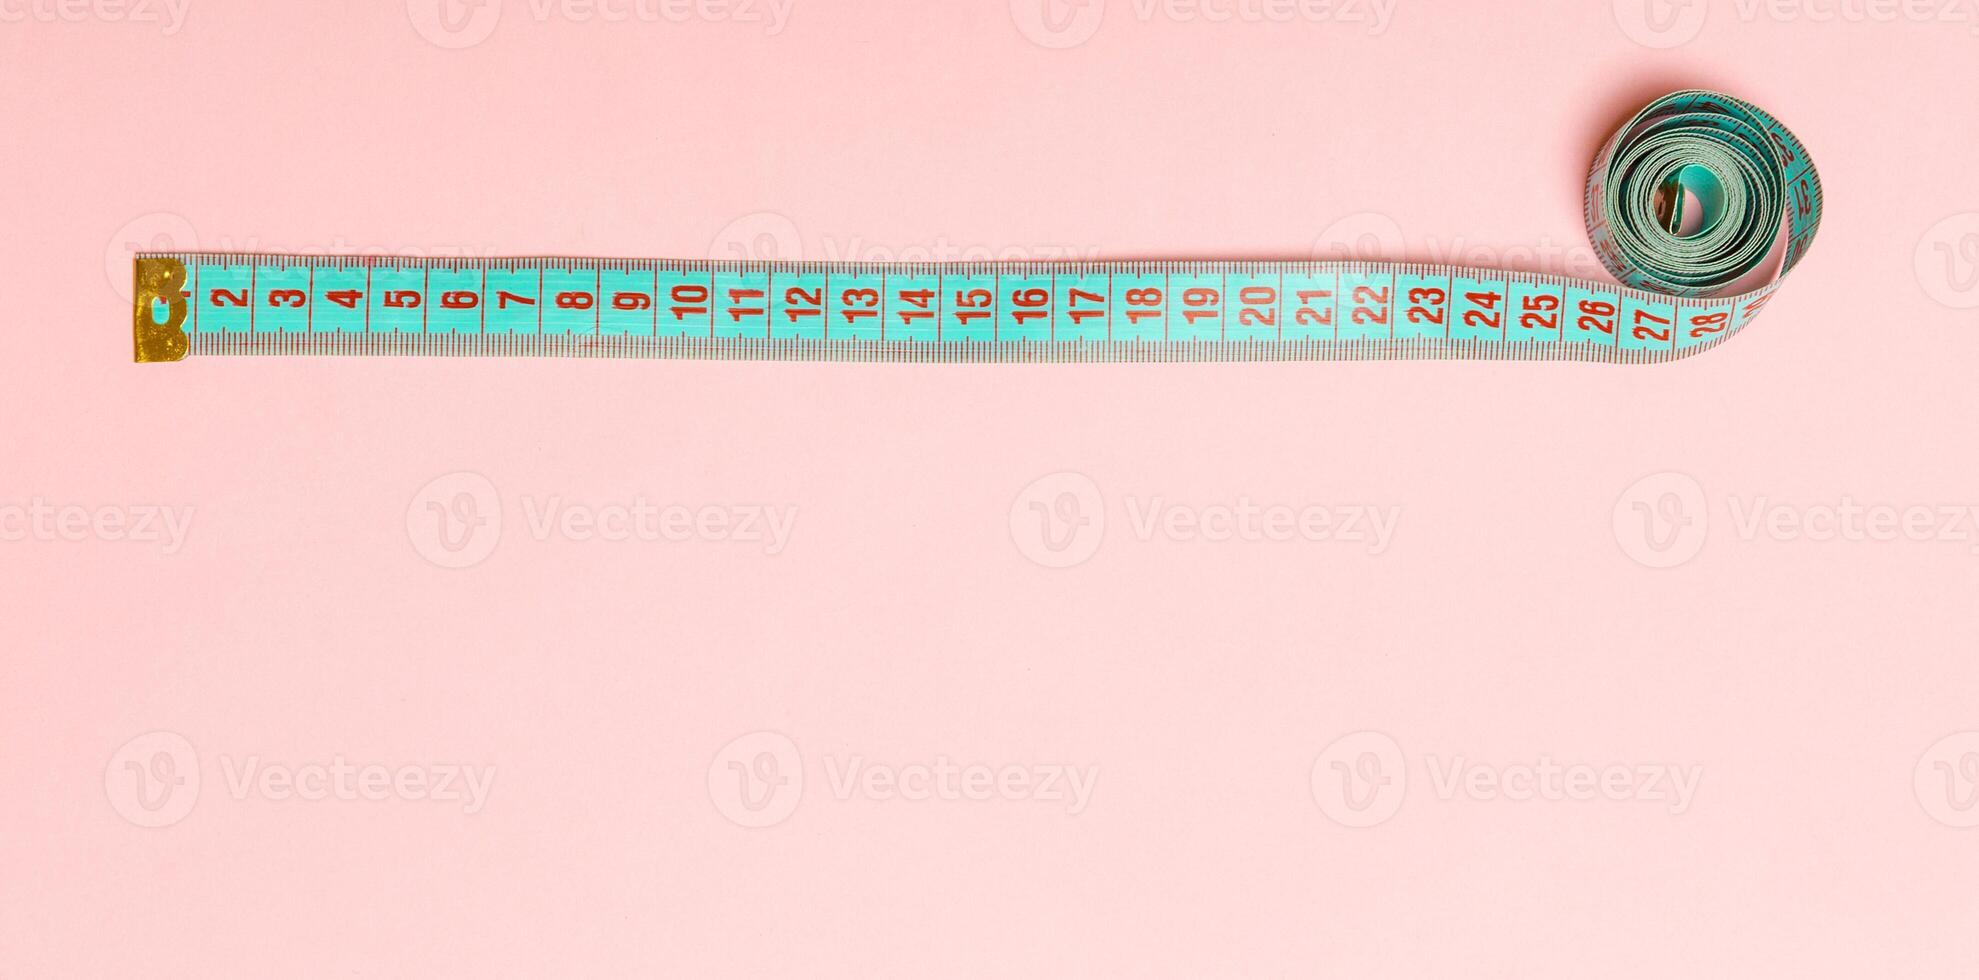 vista superior da fita métrica em forma de moldura em fundo rosa. conceito de alimentação equilibrada com espaço de cópia foto